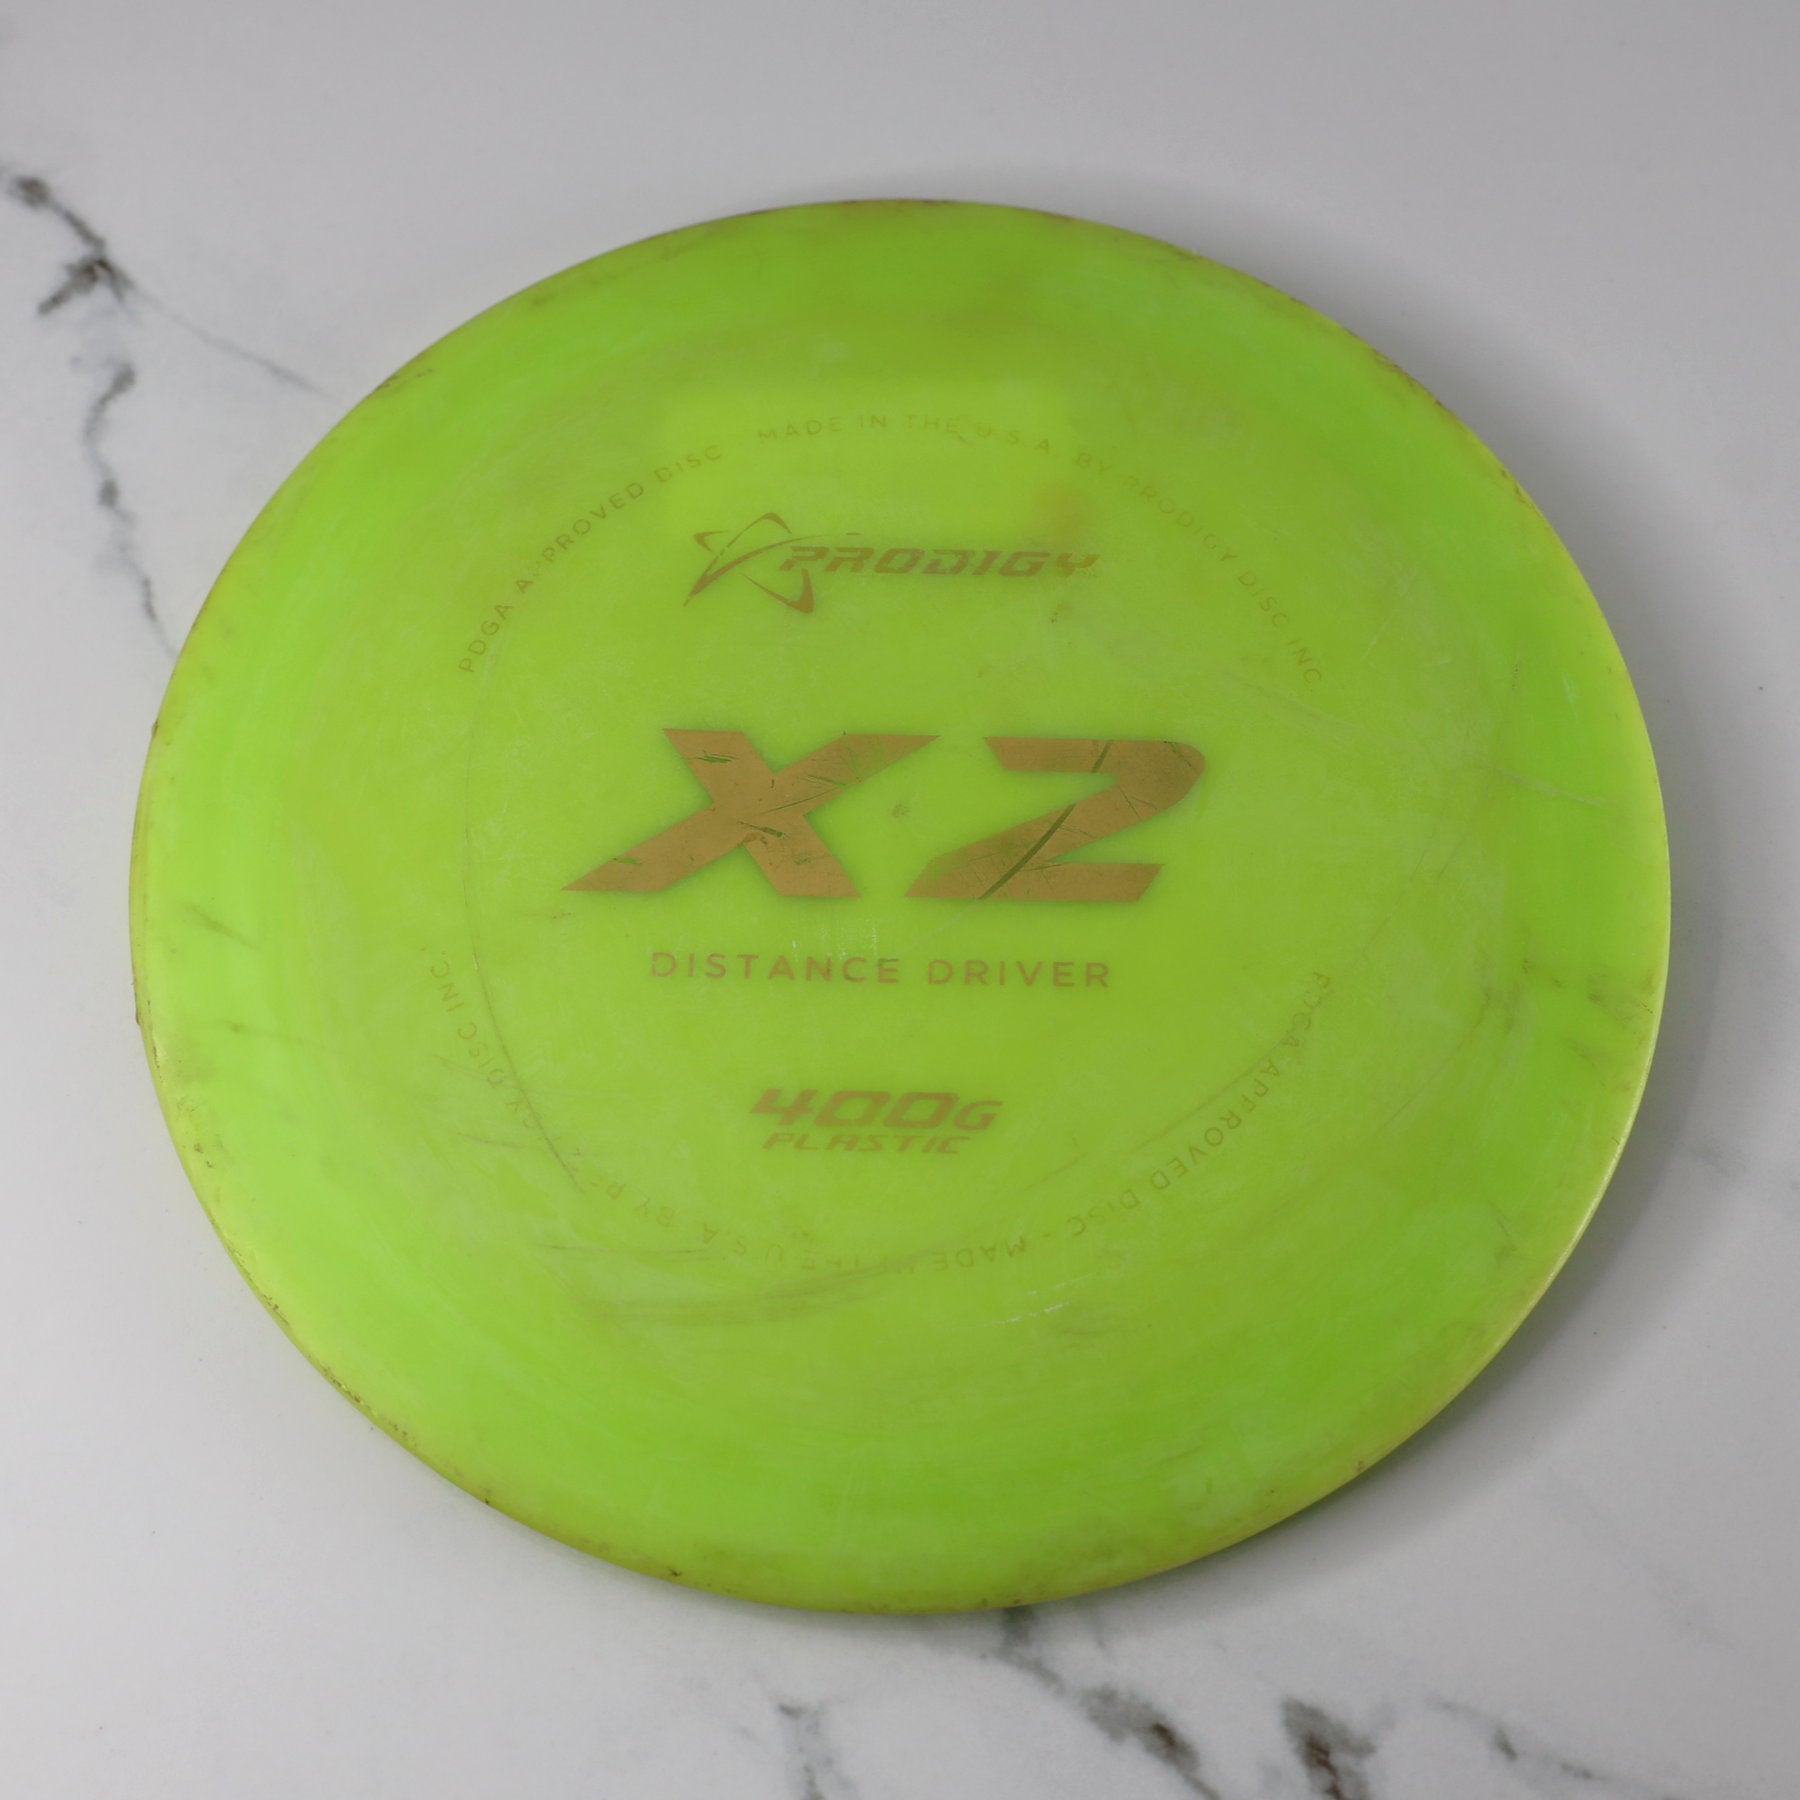 Used Prodigy X2-400